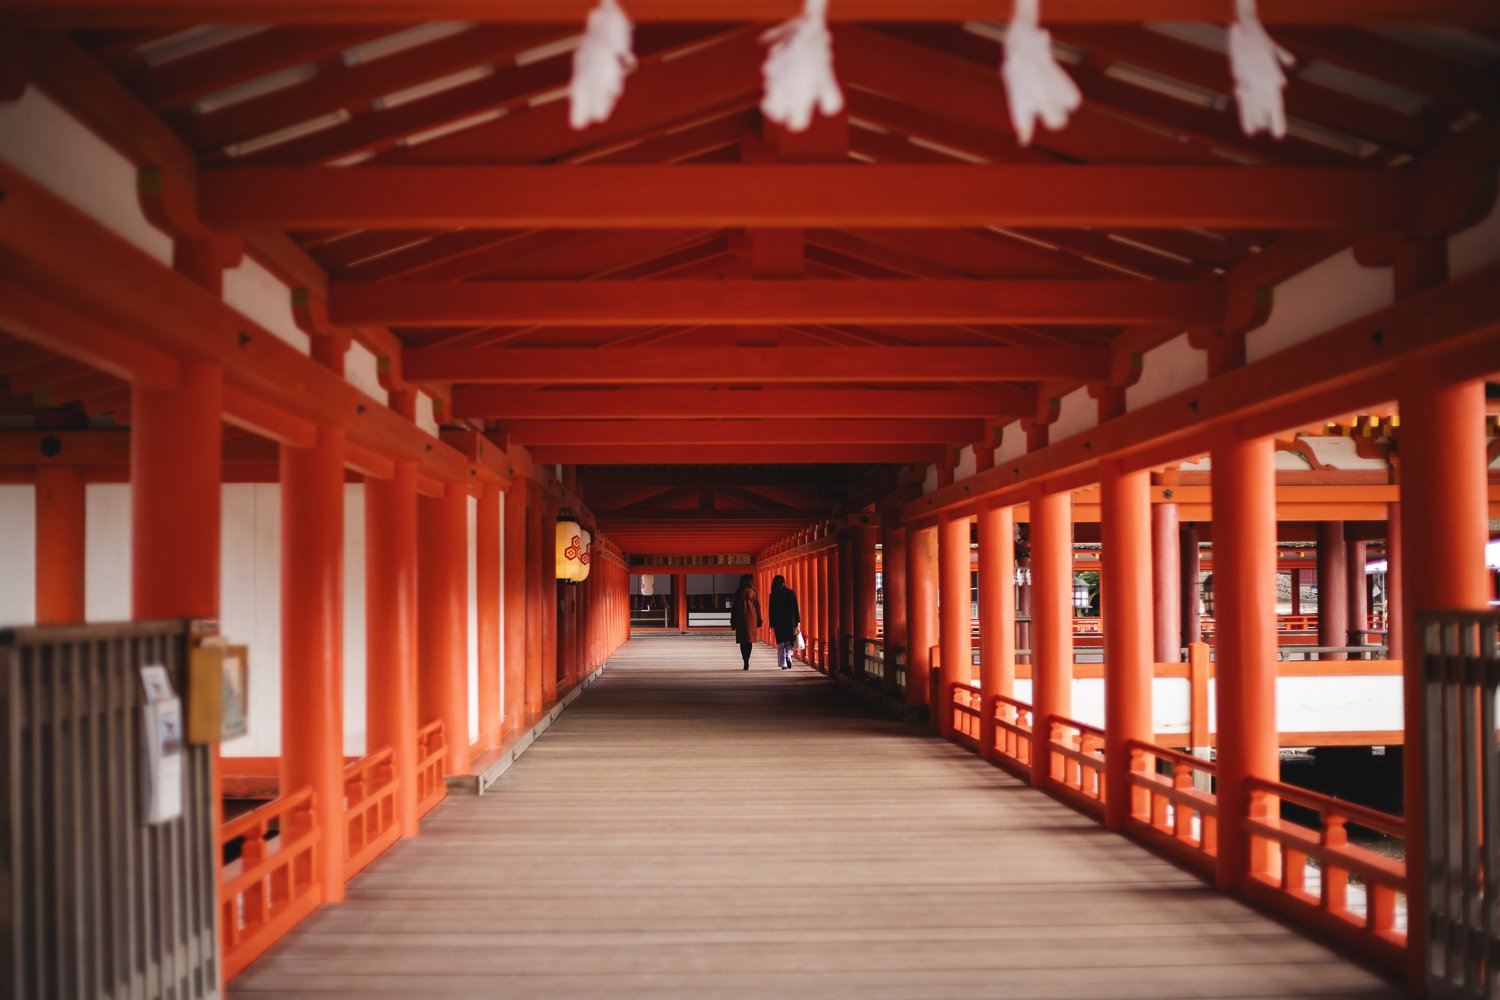 Un couloir dans le sanctuaire Itsukushima à Miyajima. Une allée de bois est entourée de poutres vermillons de chaque côté et au plafond.